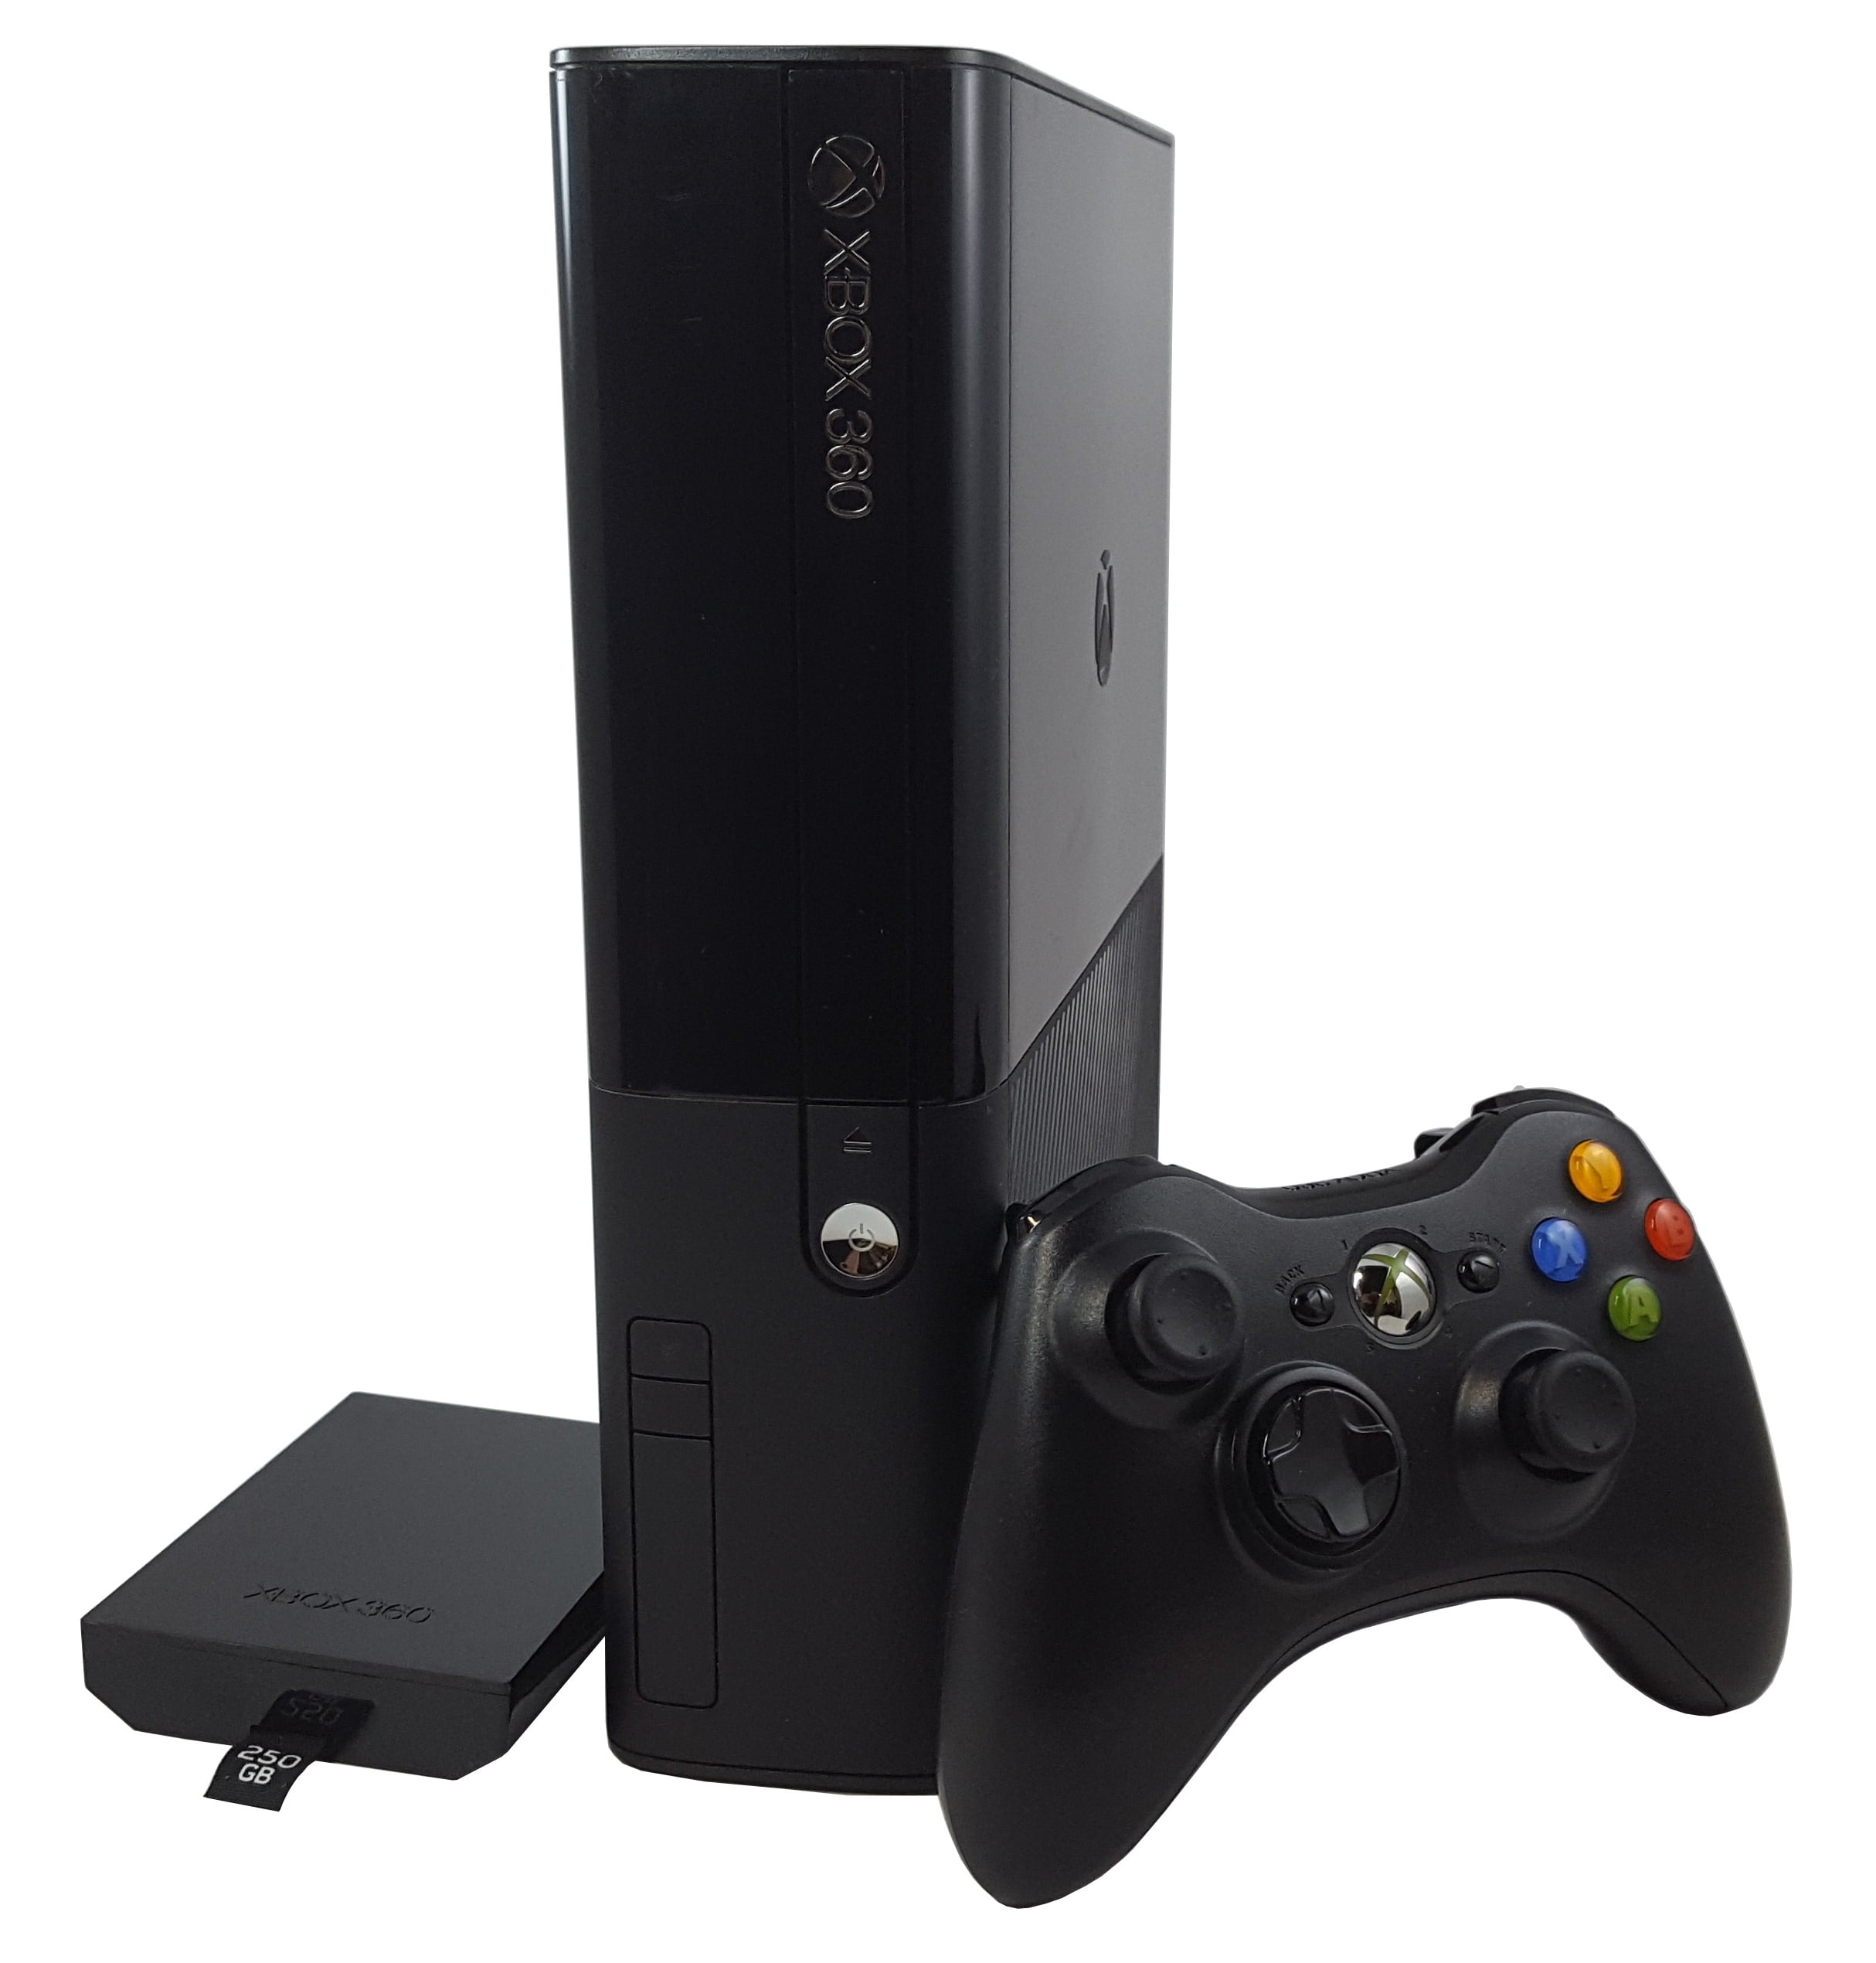 Console Xbox 360 Slim 250GB Black Piano - Microsoft - MeuGameUsado